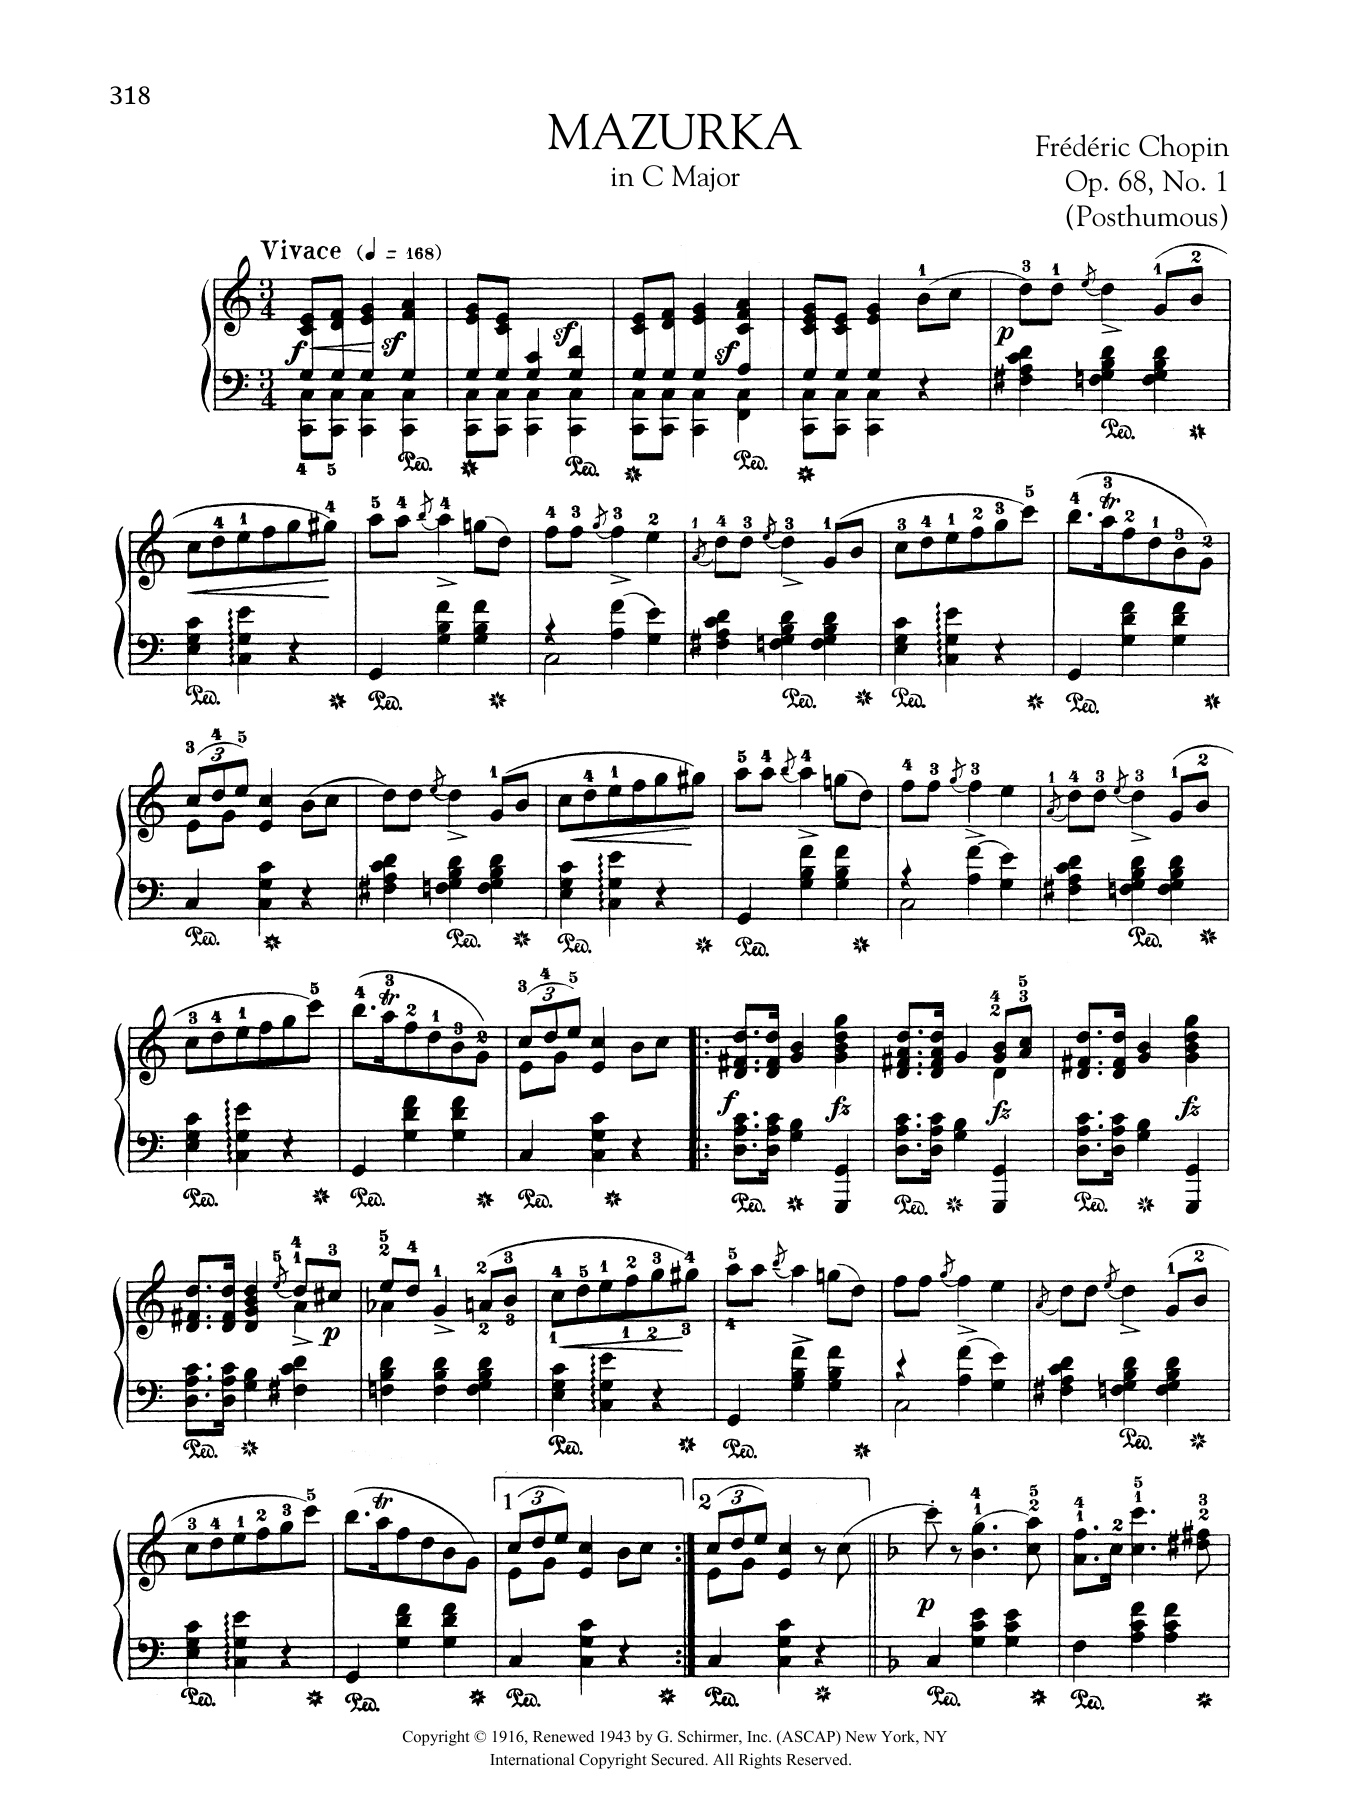 Mazurka in C Major, Op. 68, No. 1 (Posthumous) sheet music